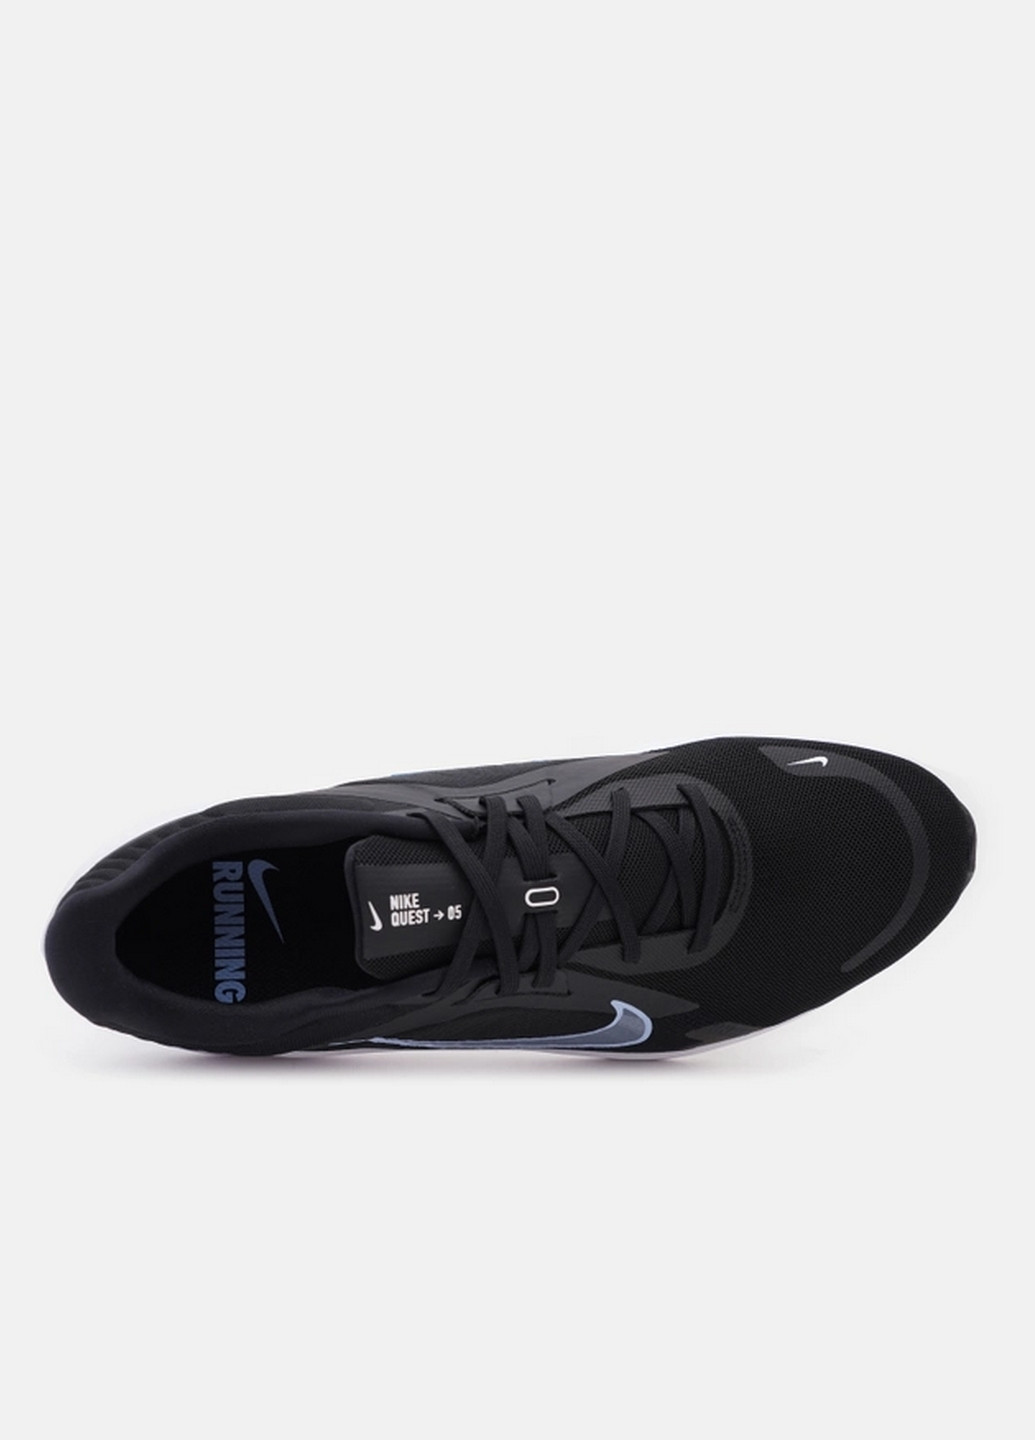 Чорні Осінні чоловічі кросівки Nike QUEST 5